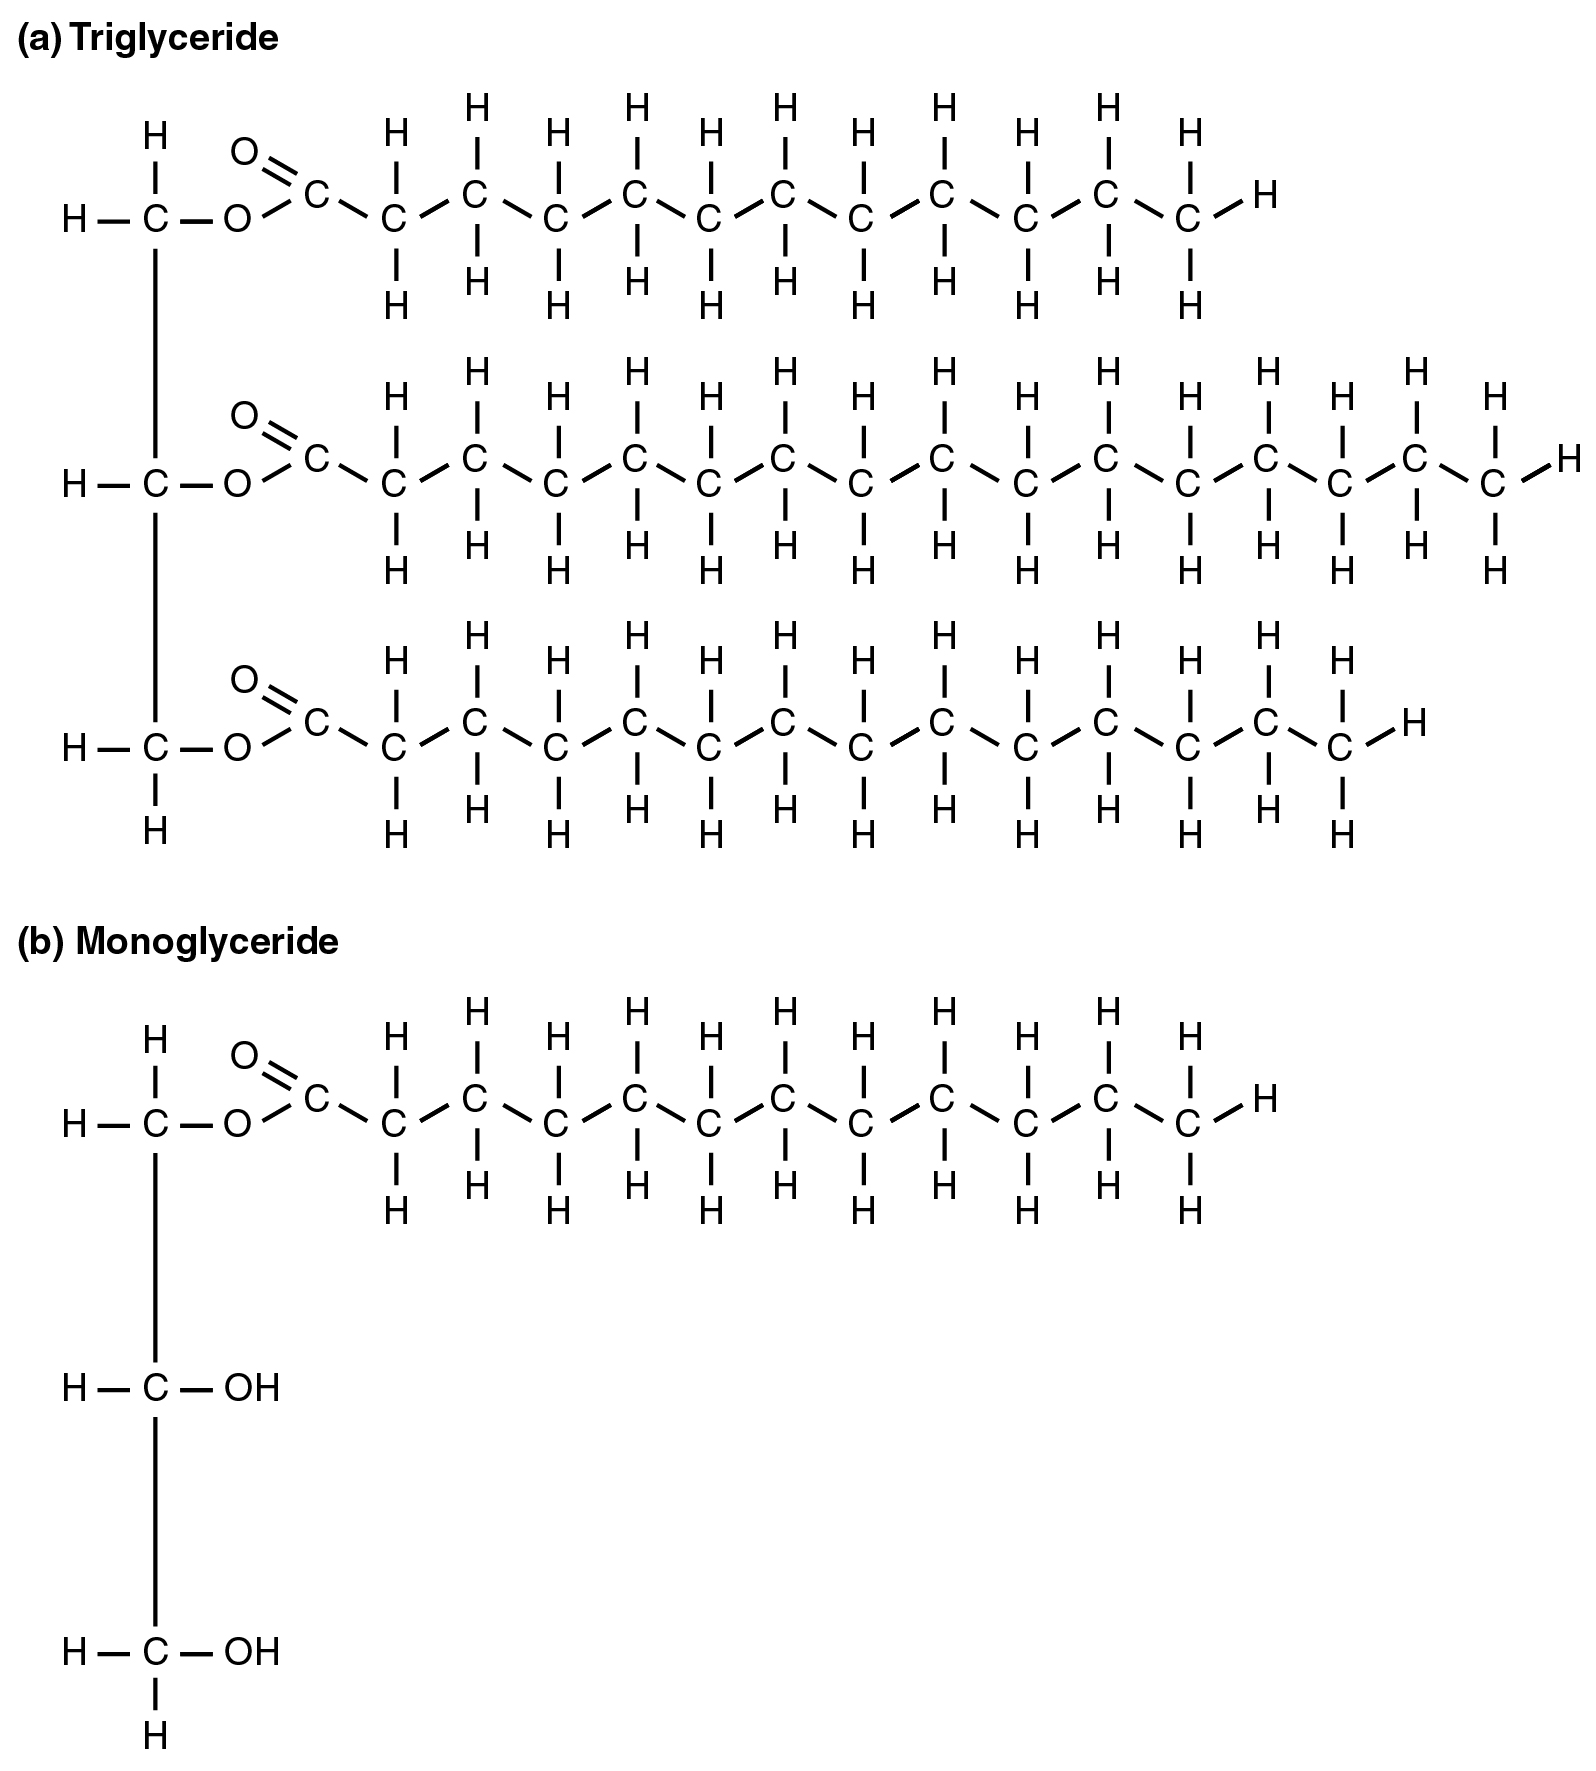 2511_A_Triglyceride_Molecule_(a)_Is_Broken_Down_Into_Monoglycerides_(b).jpg